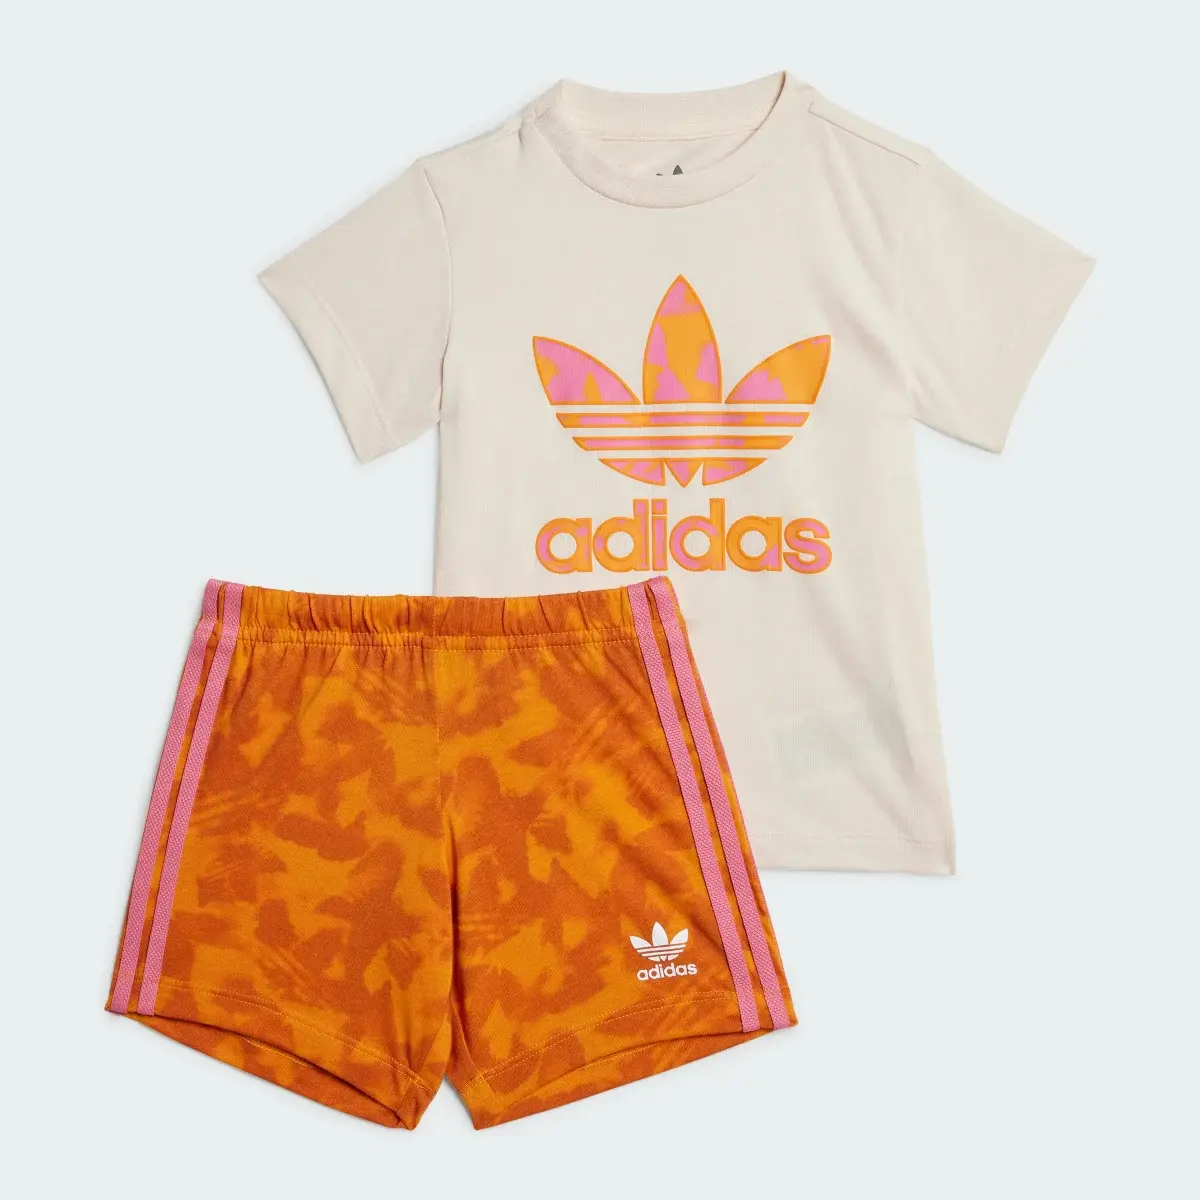 Adidas Summer Allover Print Short Tee Set. 2